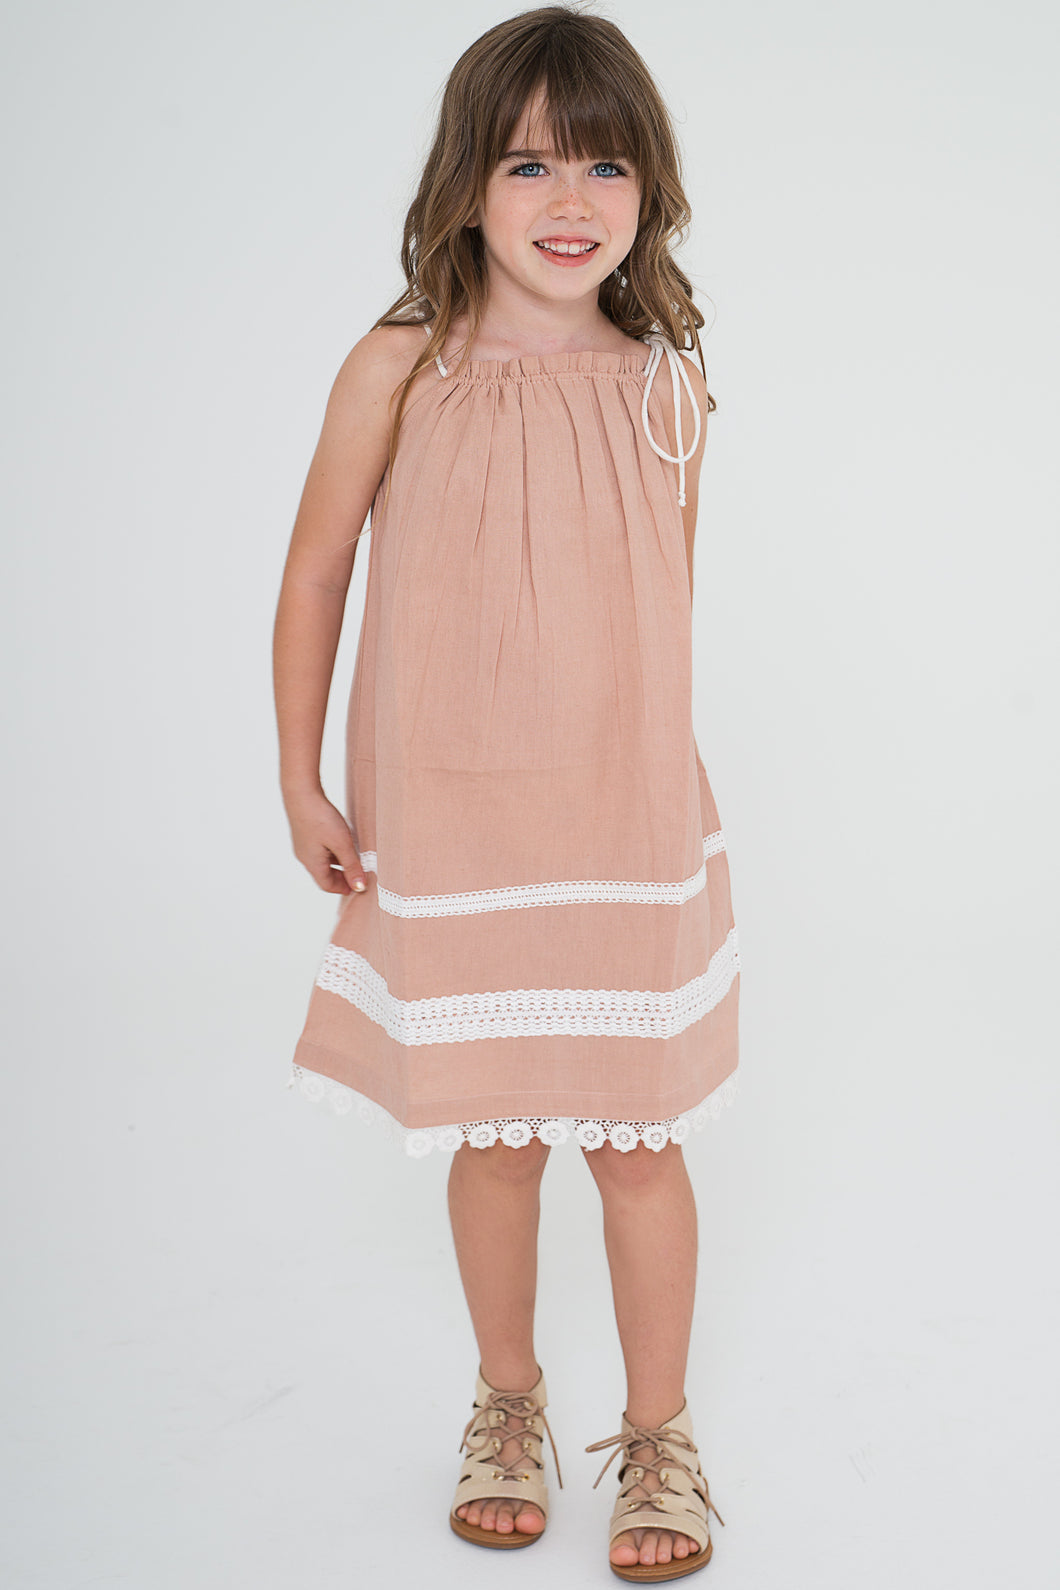 Blush Pillow-case Lace Dress - Kids Wholesale Boutique Clothing, Dress - Girls Dresses, Yo Baby Wholesale - Yo Baby